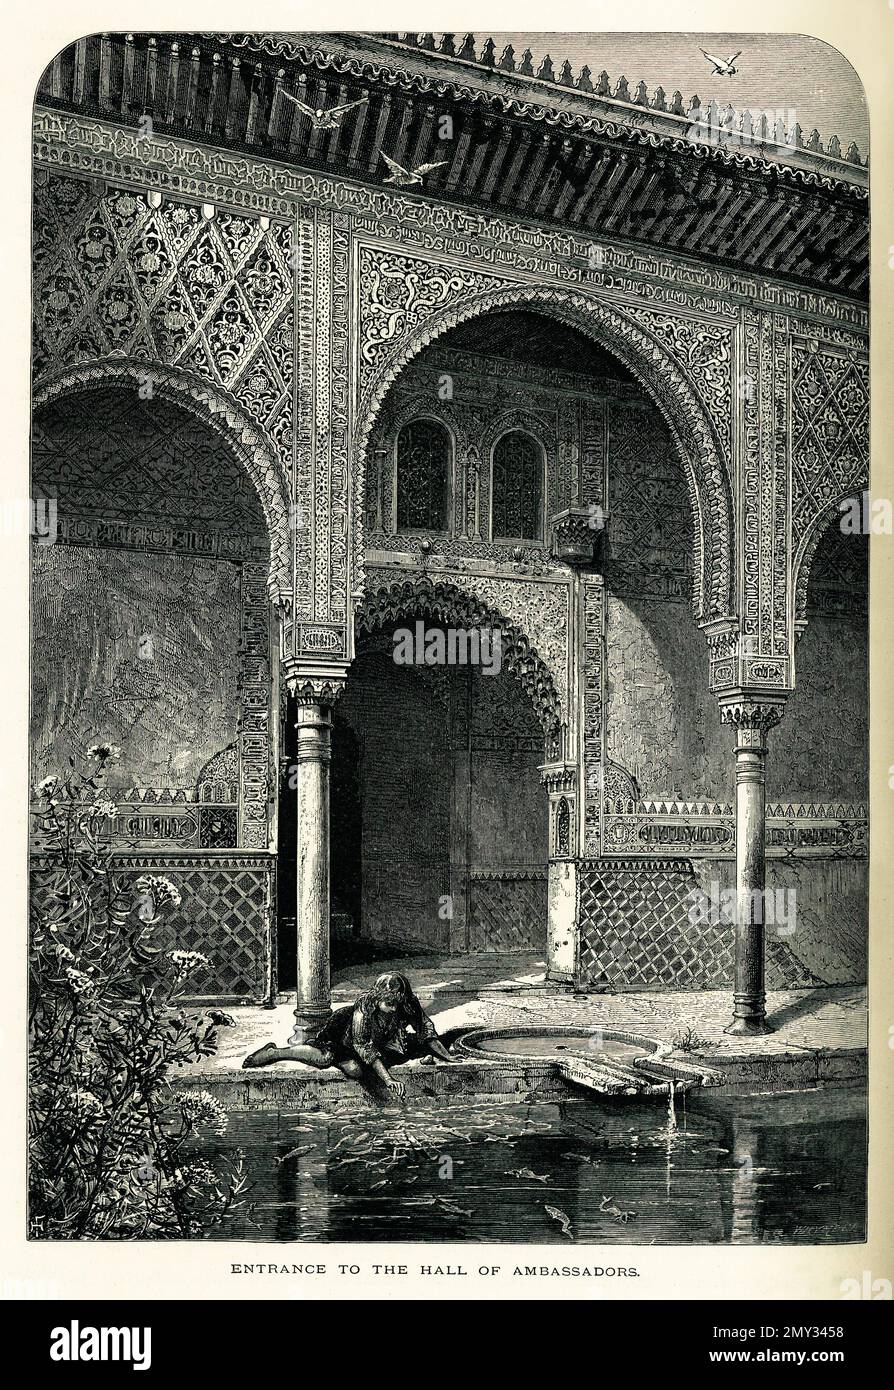 Antica incisione dell'ingresso alla Sala degli Ambasciatori nel Palazzo dell'Alhambra, Granada, Spagna. Illustrazione pubblicata nella pittoresca Europa, Foto Stock